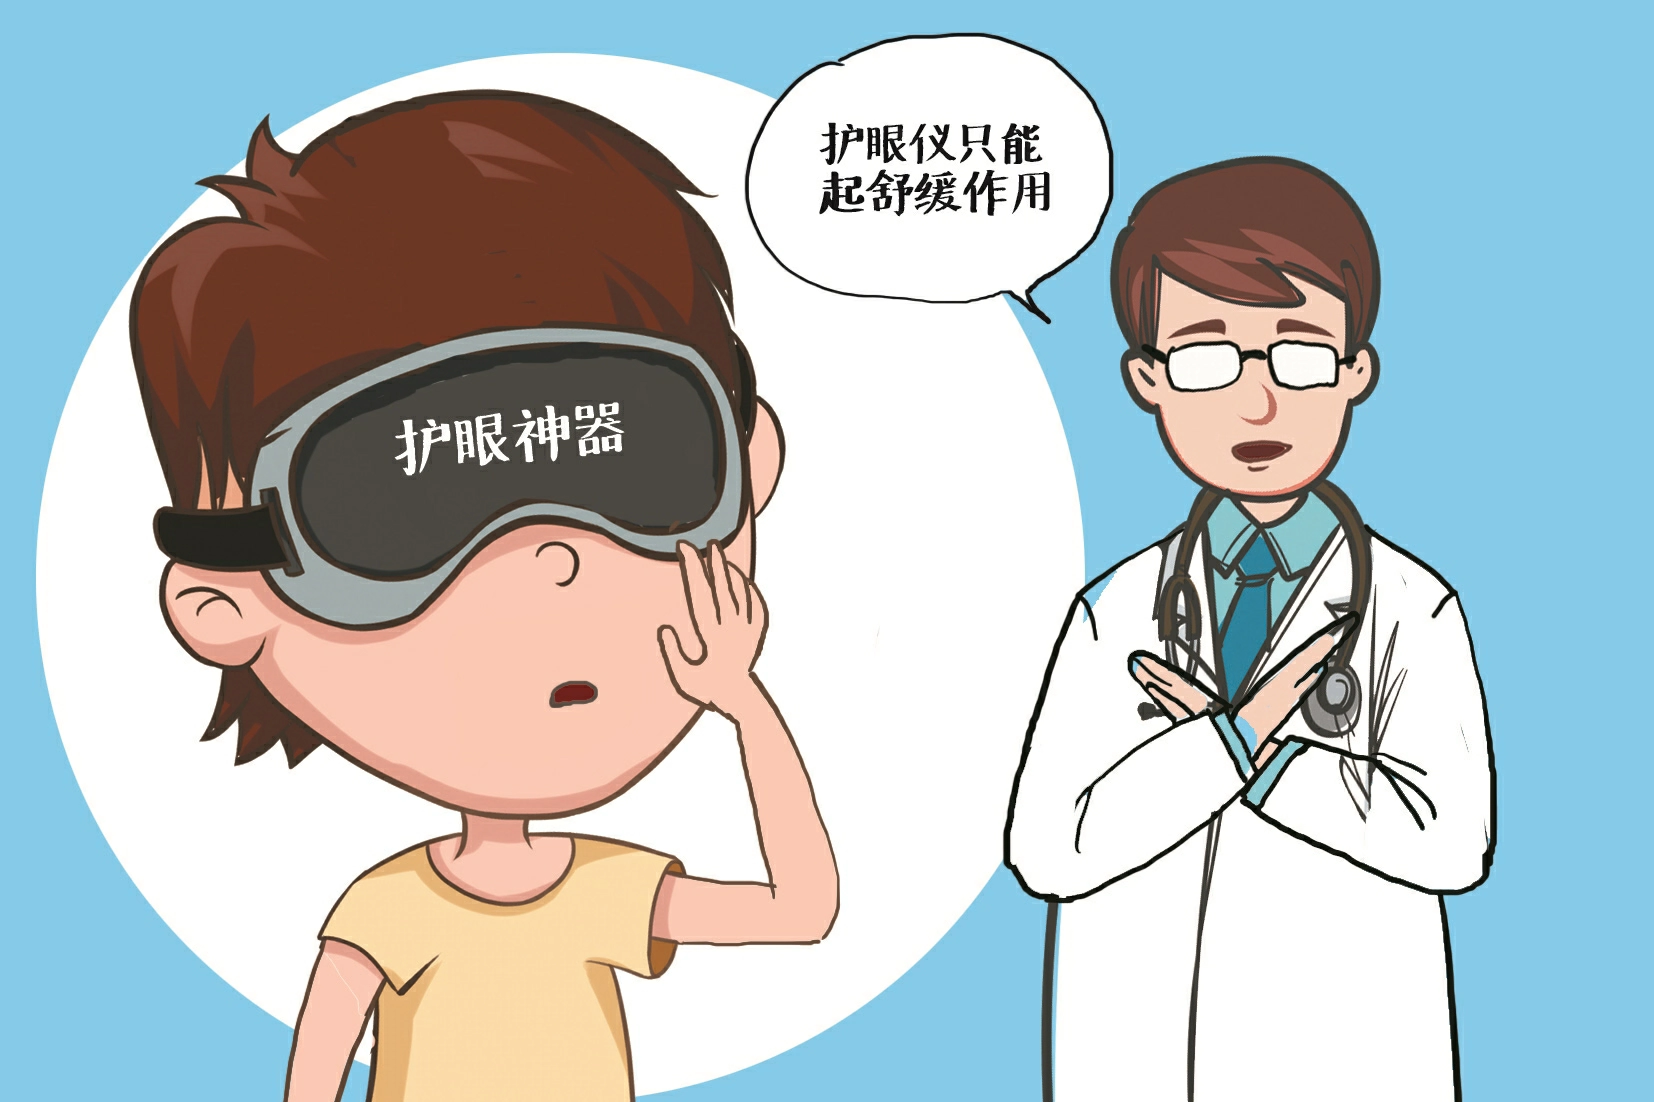 部分商家宣称护眼仪能让孩子告别眼镜 专家提醒：真性近视不可逆，科学用眼更重要